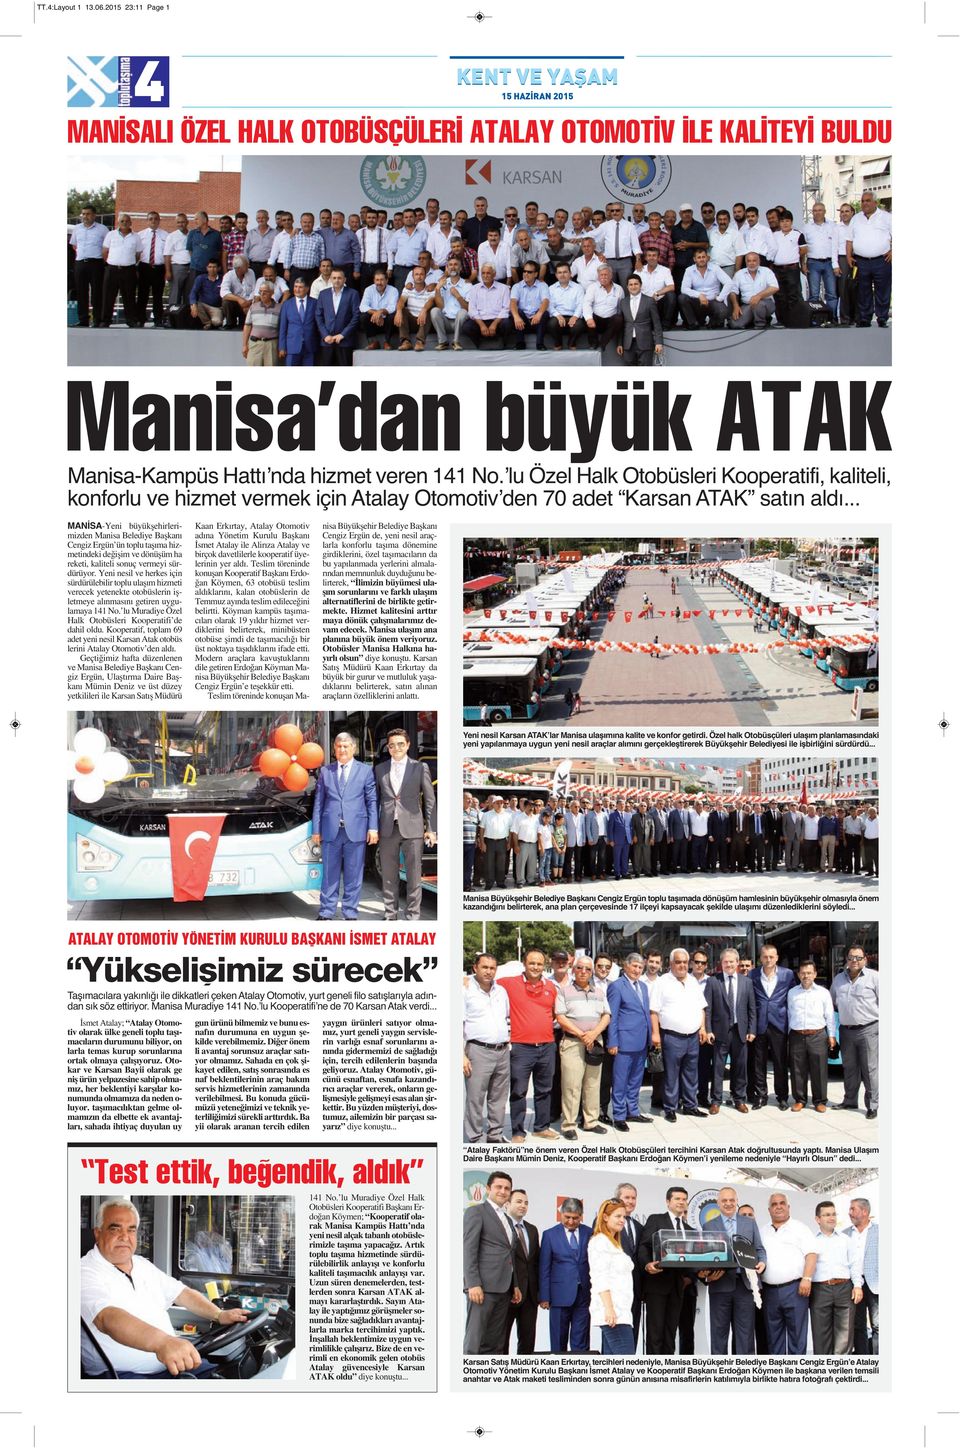 ʼlu Özel Halk Otobüsleri Kooperatifi, kaliteli, konforlu ve hizmet vermek için Atalay Otomotivʼden 70 adet Karsan ATAK satın aldı.